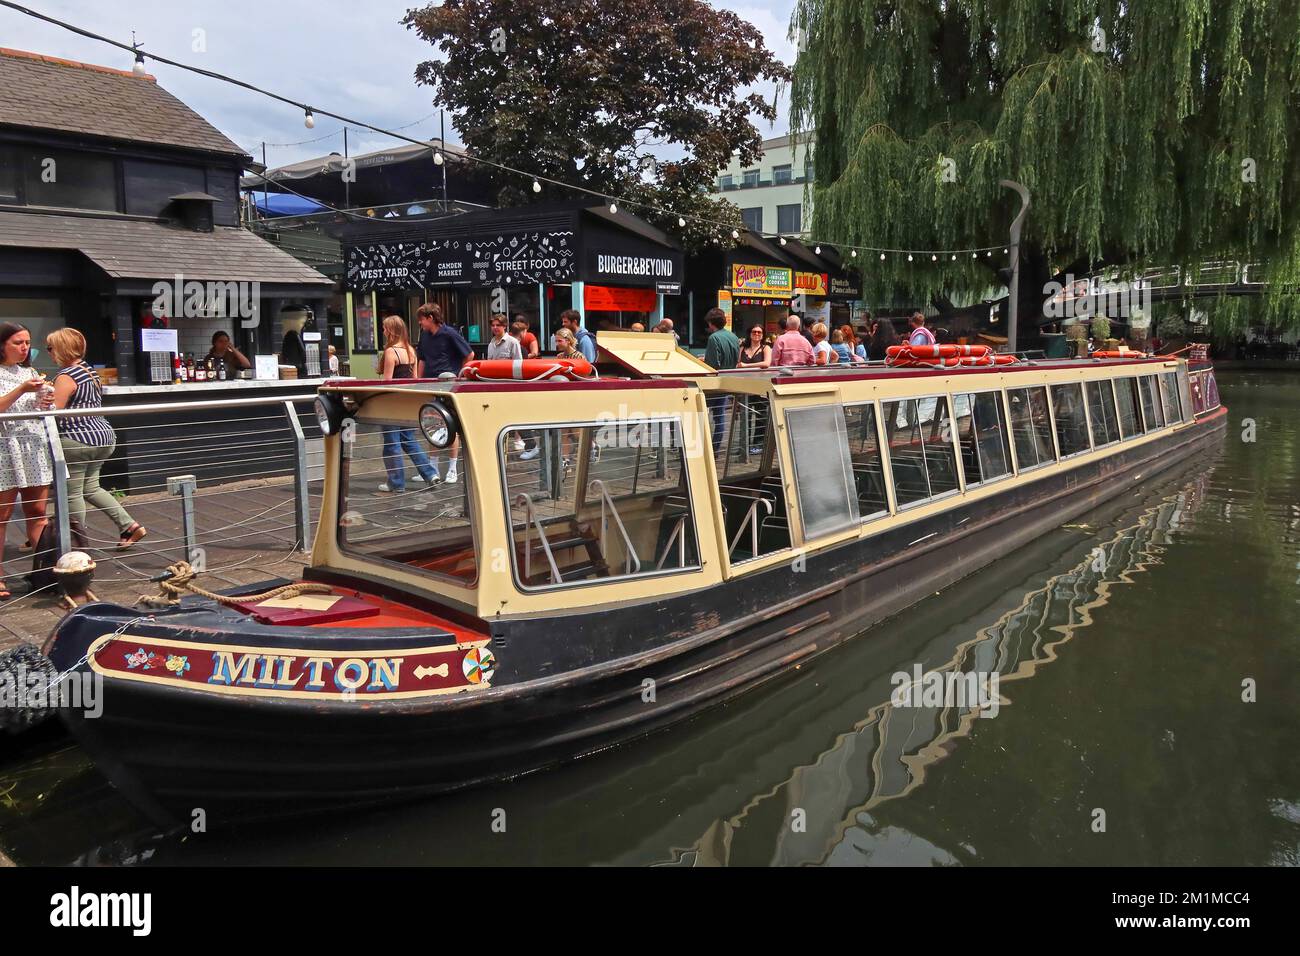 Milton bateau-bus à Camden Locks, canal, bateaux et marché, Lock place, Camden, Londres, Angleterre, Royaume-Uni, NW1 8AF Banque D'Images